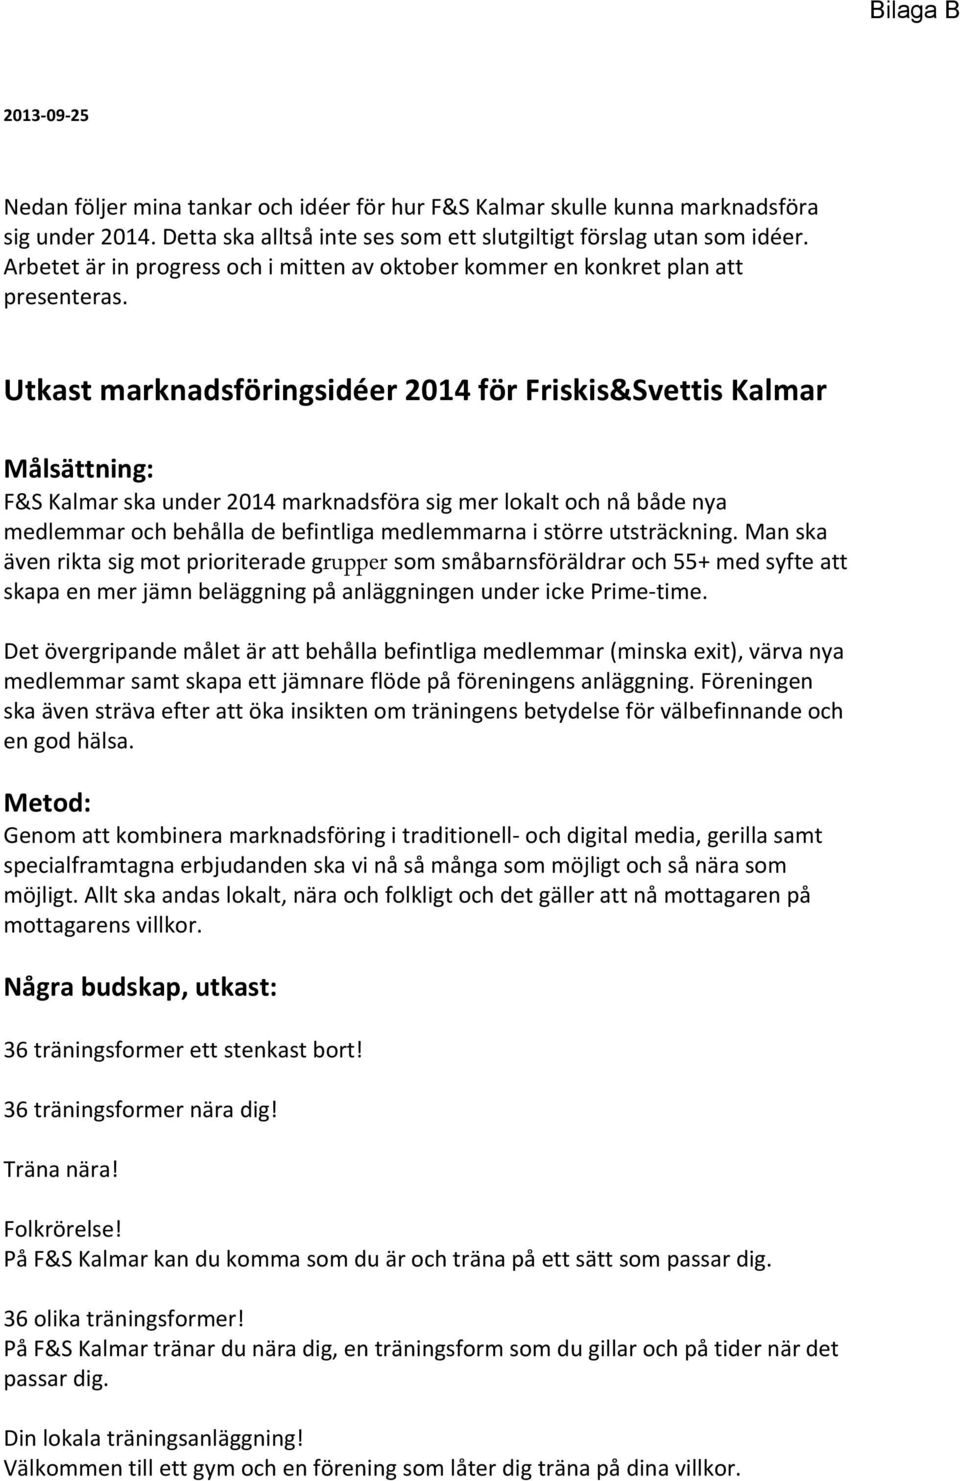 Utkast marknadsföringsidéer 2014 för Friskis&Svettis Kalmar Målsättning: F&S Kalmar ska under 2014 marknadsföra sig mer lokalt och nå både nya medlemmar och behålla de befintliga medlemmarna i större